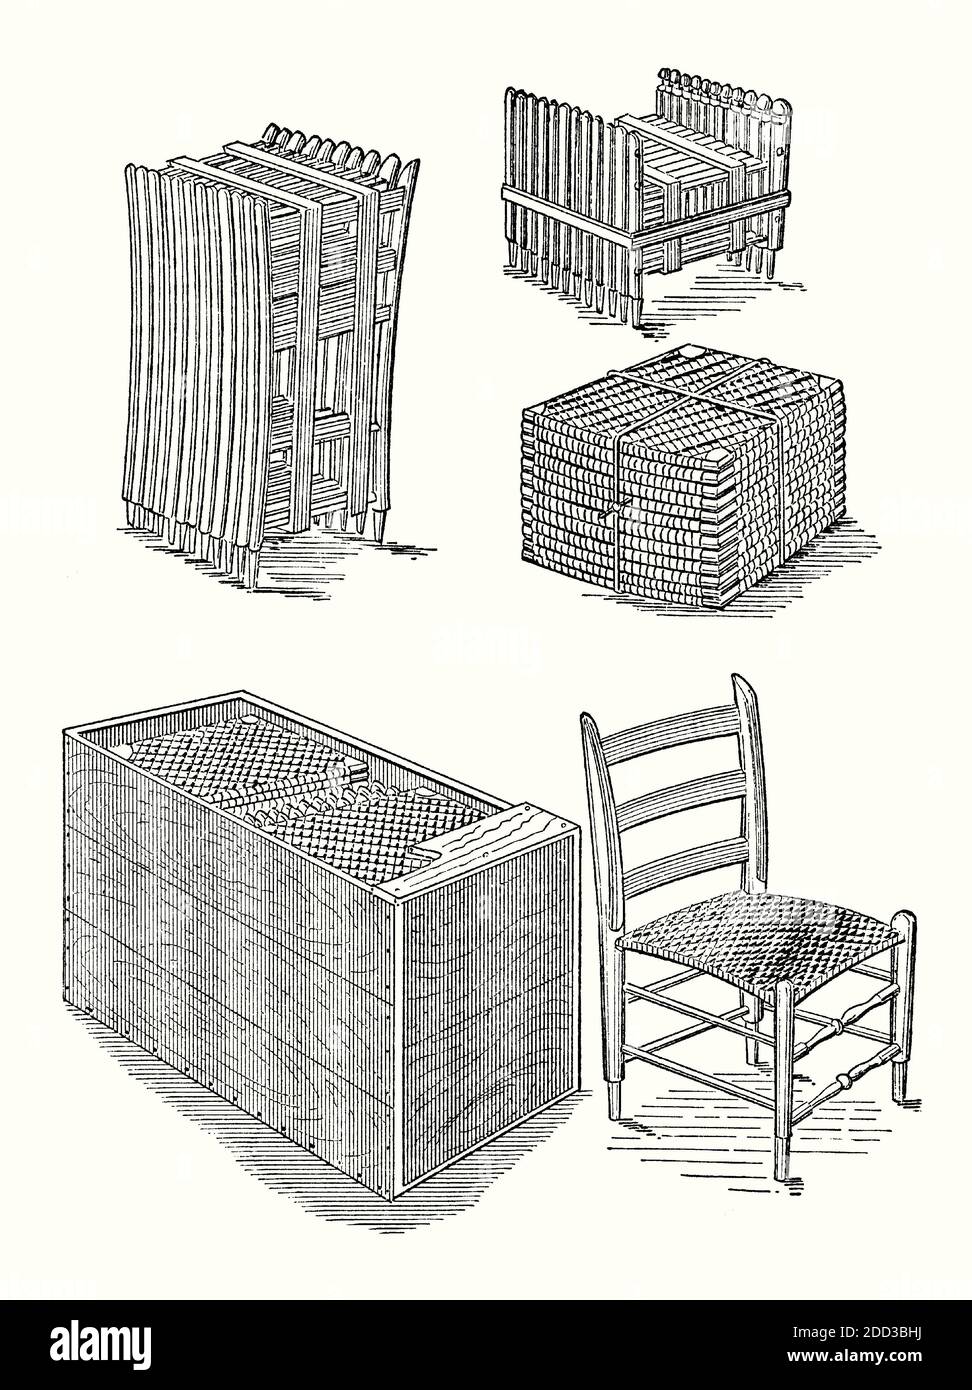 Une ancienne gravure de meubles de sièges à défoncer. Il est issu d'un livre victorien d'ingénierie mécanique des années 1880. Les meubles prêts à assembler (RTA), également connus sous le nom de mobilier de type «défonce» (KD), de mobilier de type «plat» ou de mobilier en kit, sont des meubles qui nécessitent un assemblage automatique. Le mobilier est généralement simple à assembler avec des outils de base tels que des tournevis. Il peut comprendre des «meubles de campagne», des meubles faits pour les voyages, en particulier pour les expéditions militaires. Beaucoup de meubles modernes, comme la gamme Ingvar Kamprad’ IKEA, est auto-assemblé. Banque D'Images